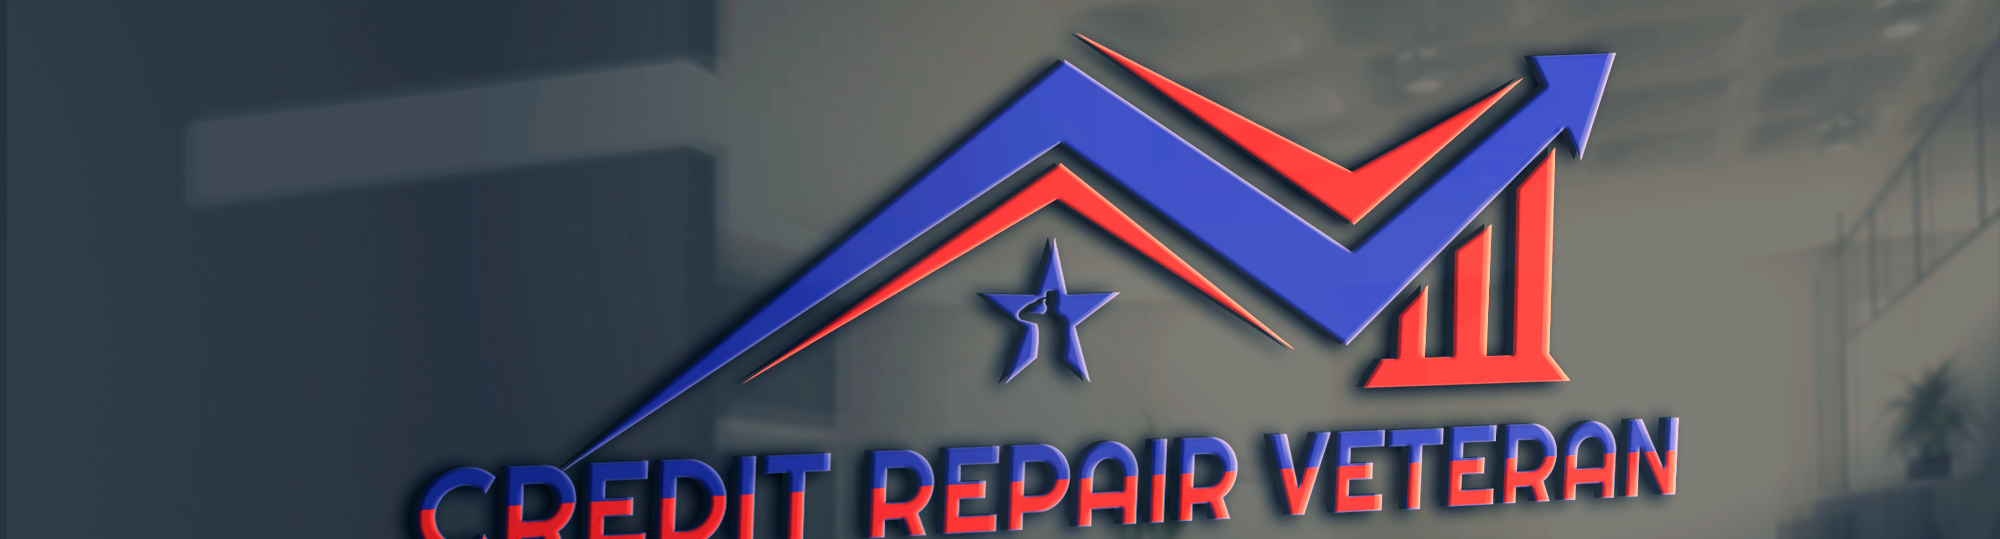 Credit Repair Veteran